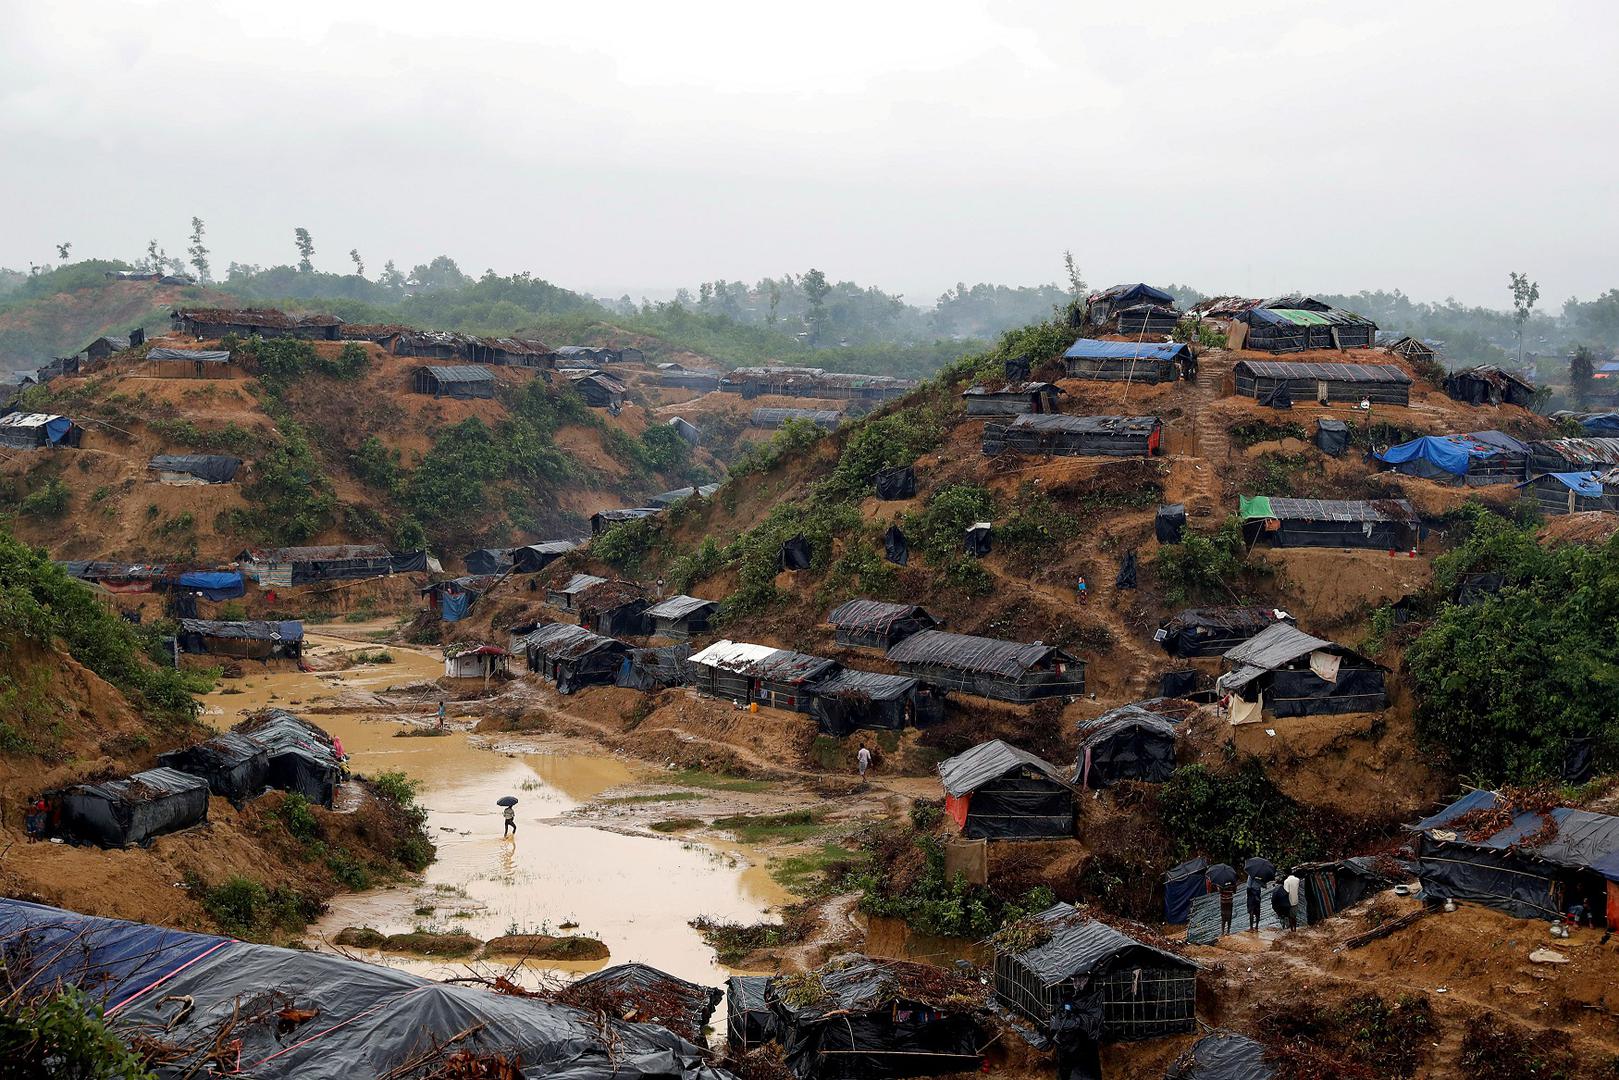 Un camp de réfugiés rohingyas à Cox's Bazar au Bangladesh, photographié le 19 septembre 2017.